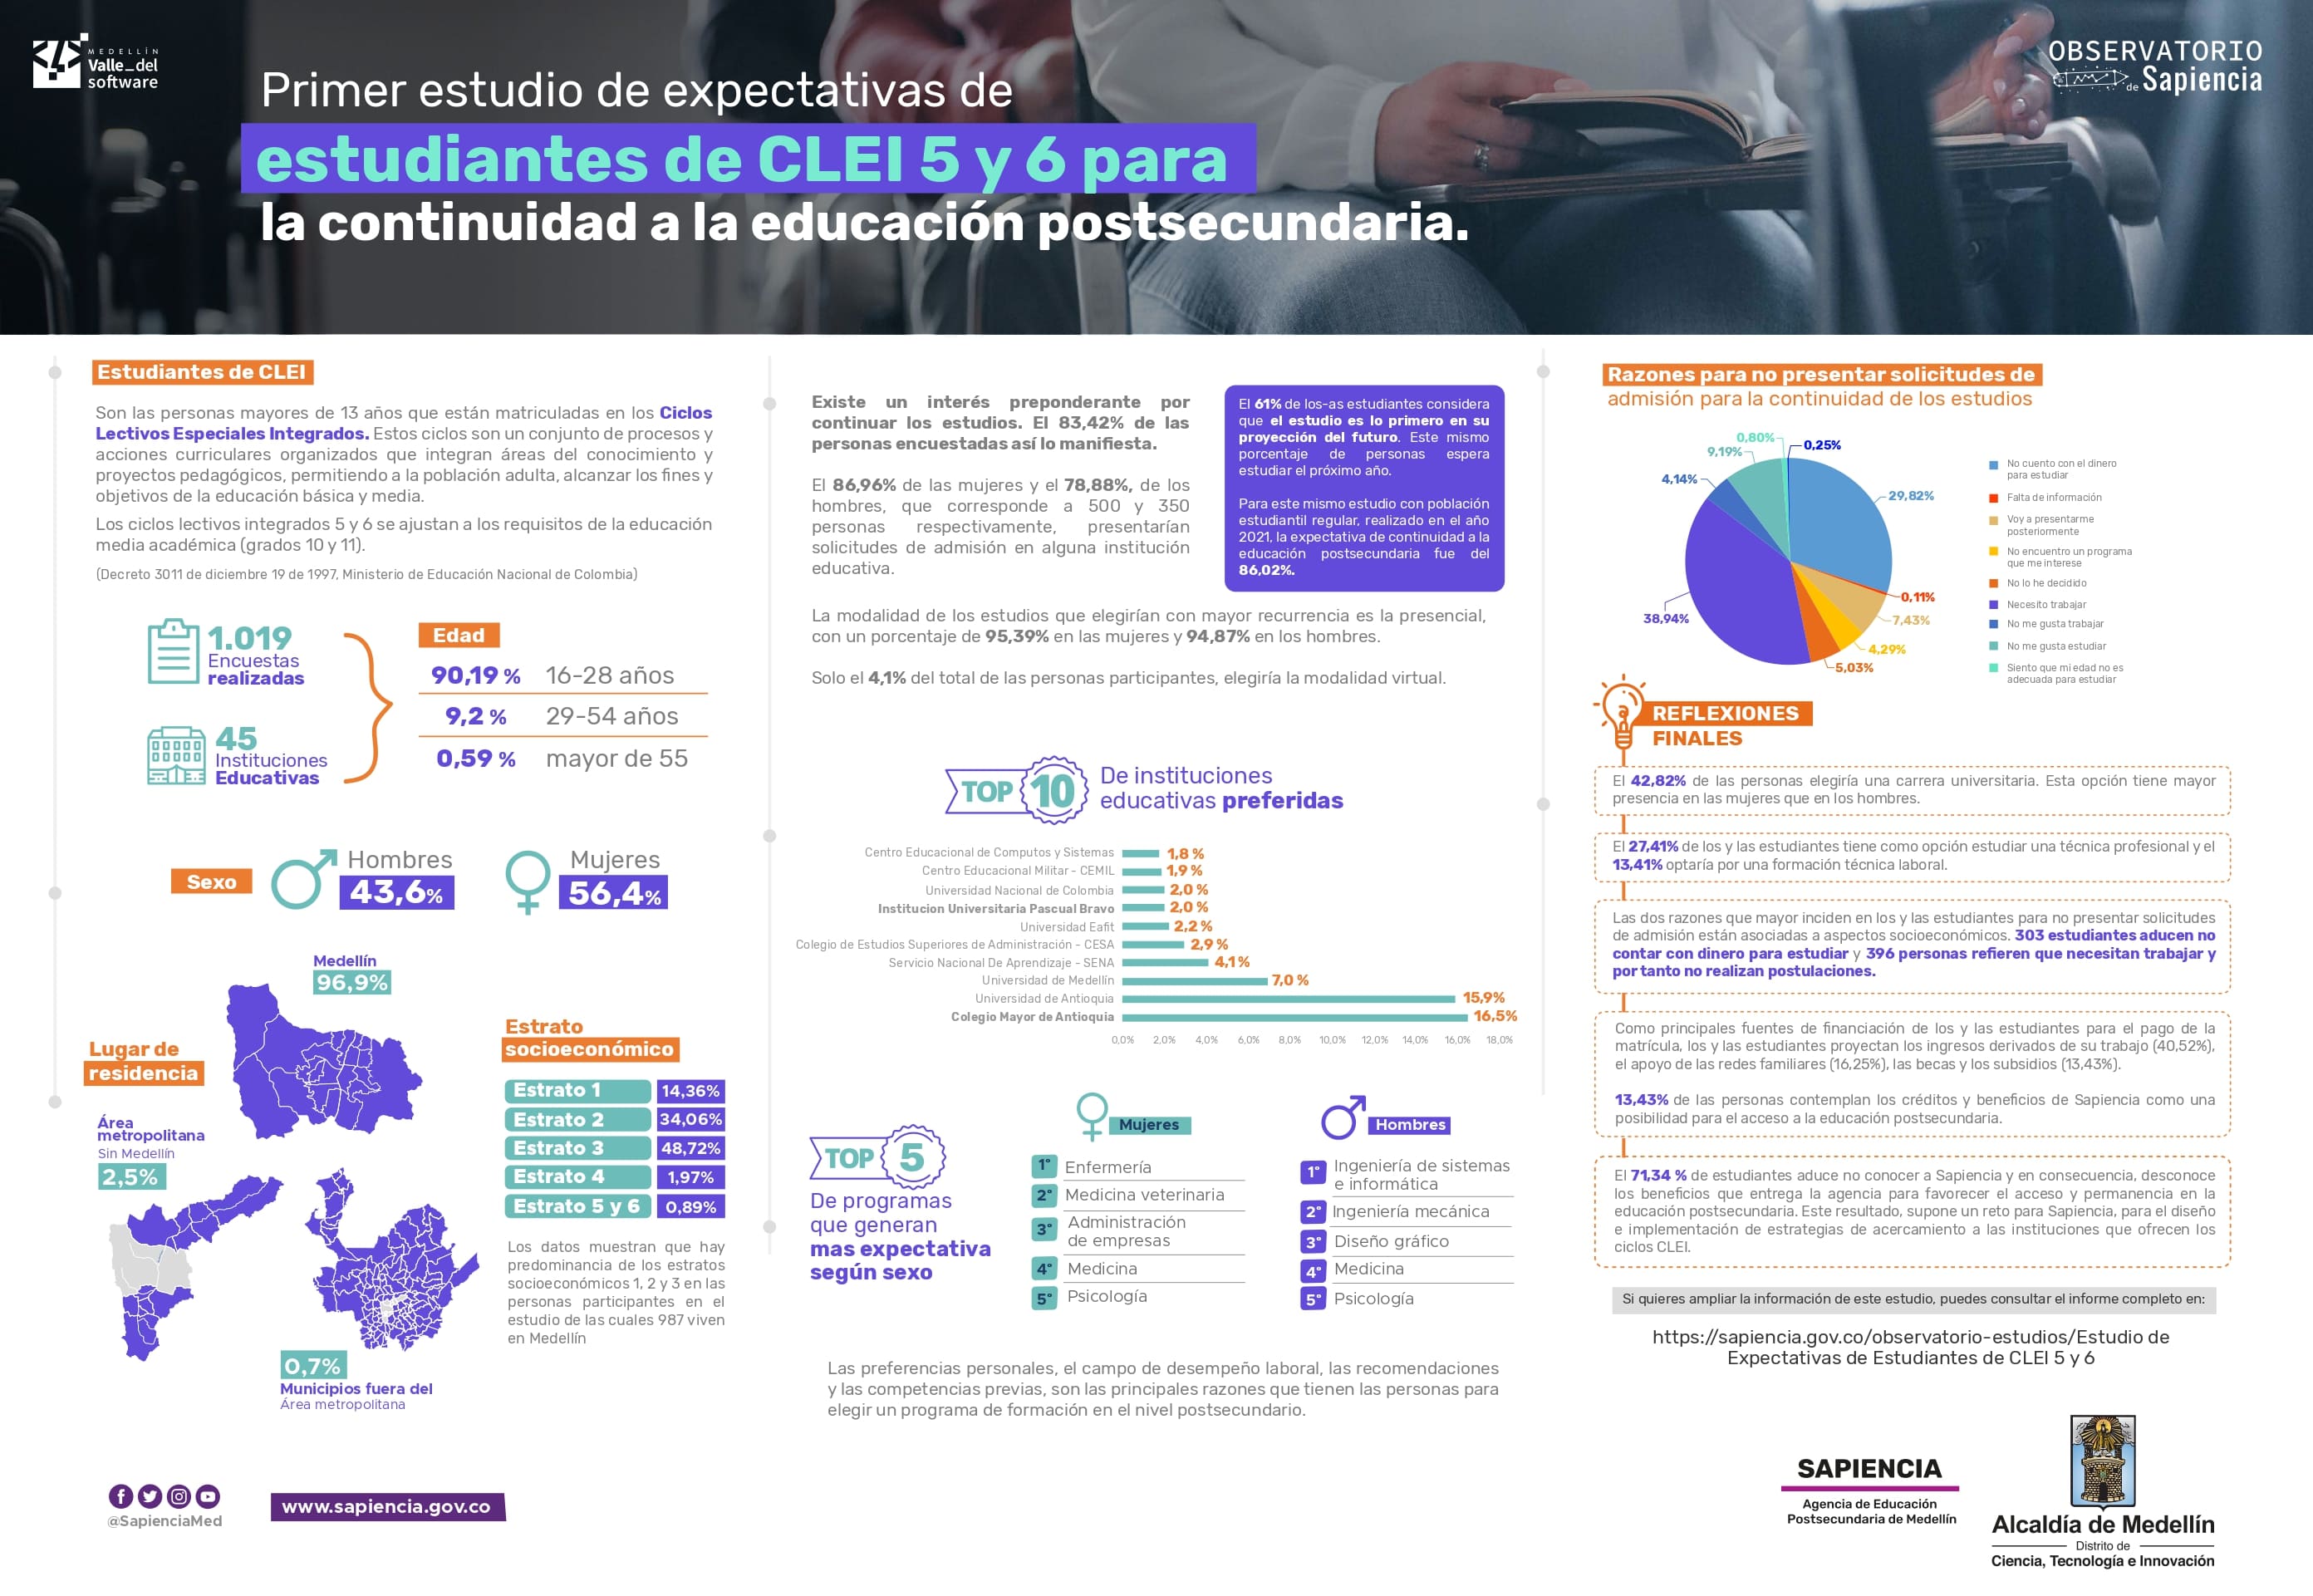 Infografía de estudio Expectativas de estudiantes de CLEI5 y 6 para la continuidad a la educación postsecundaria. 2022 del Observatorio de Sapiencia